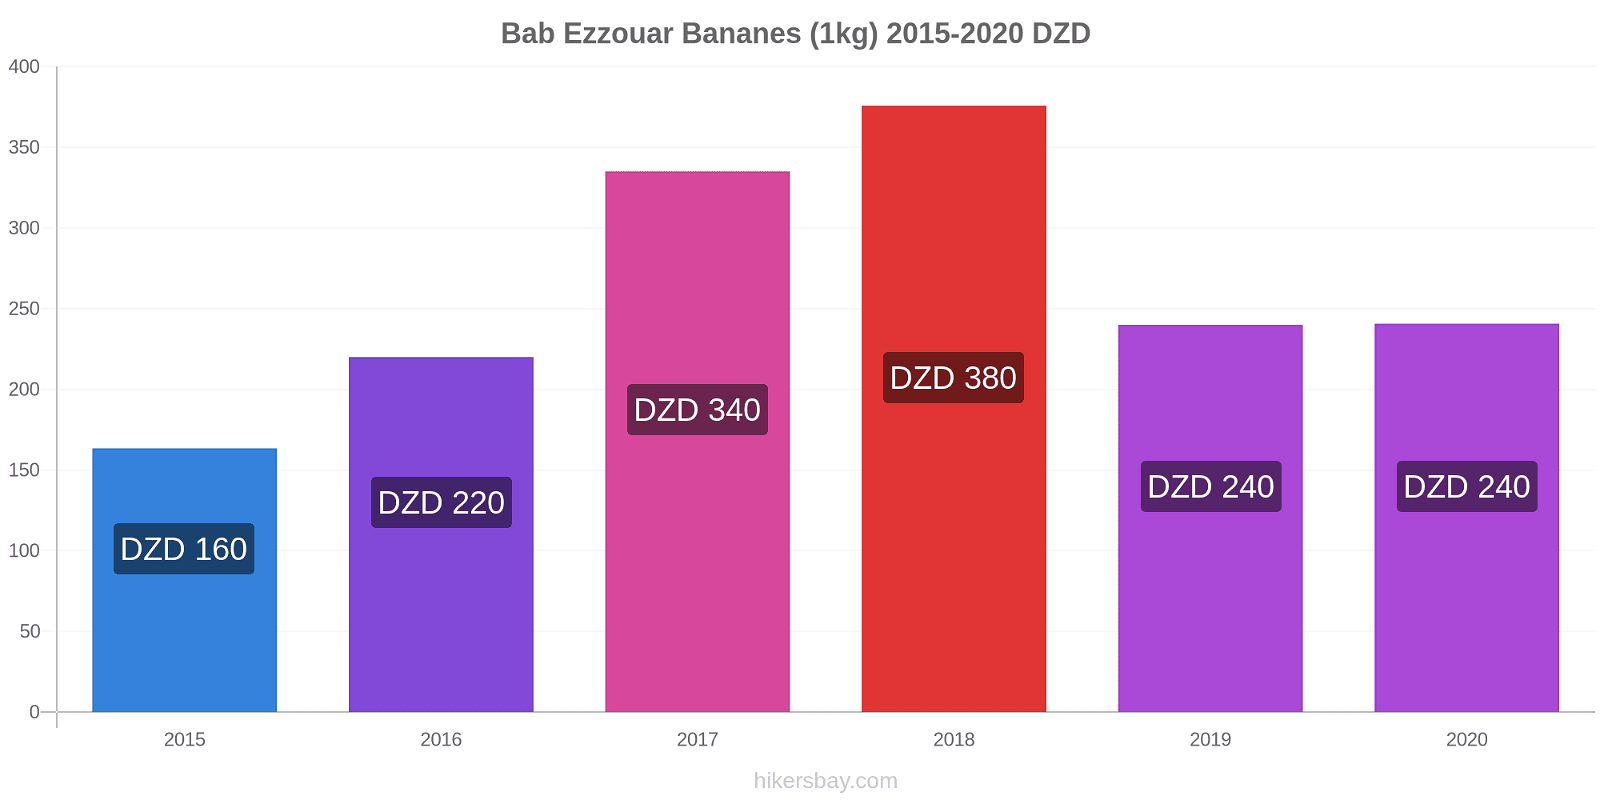 Bab Ezzouar changements de prix Bananes (1kg) hikersbay.com